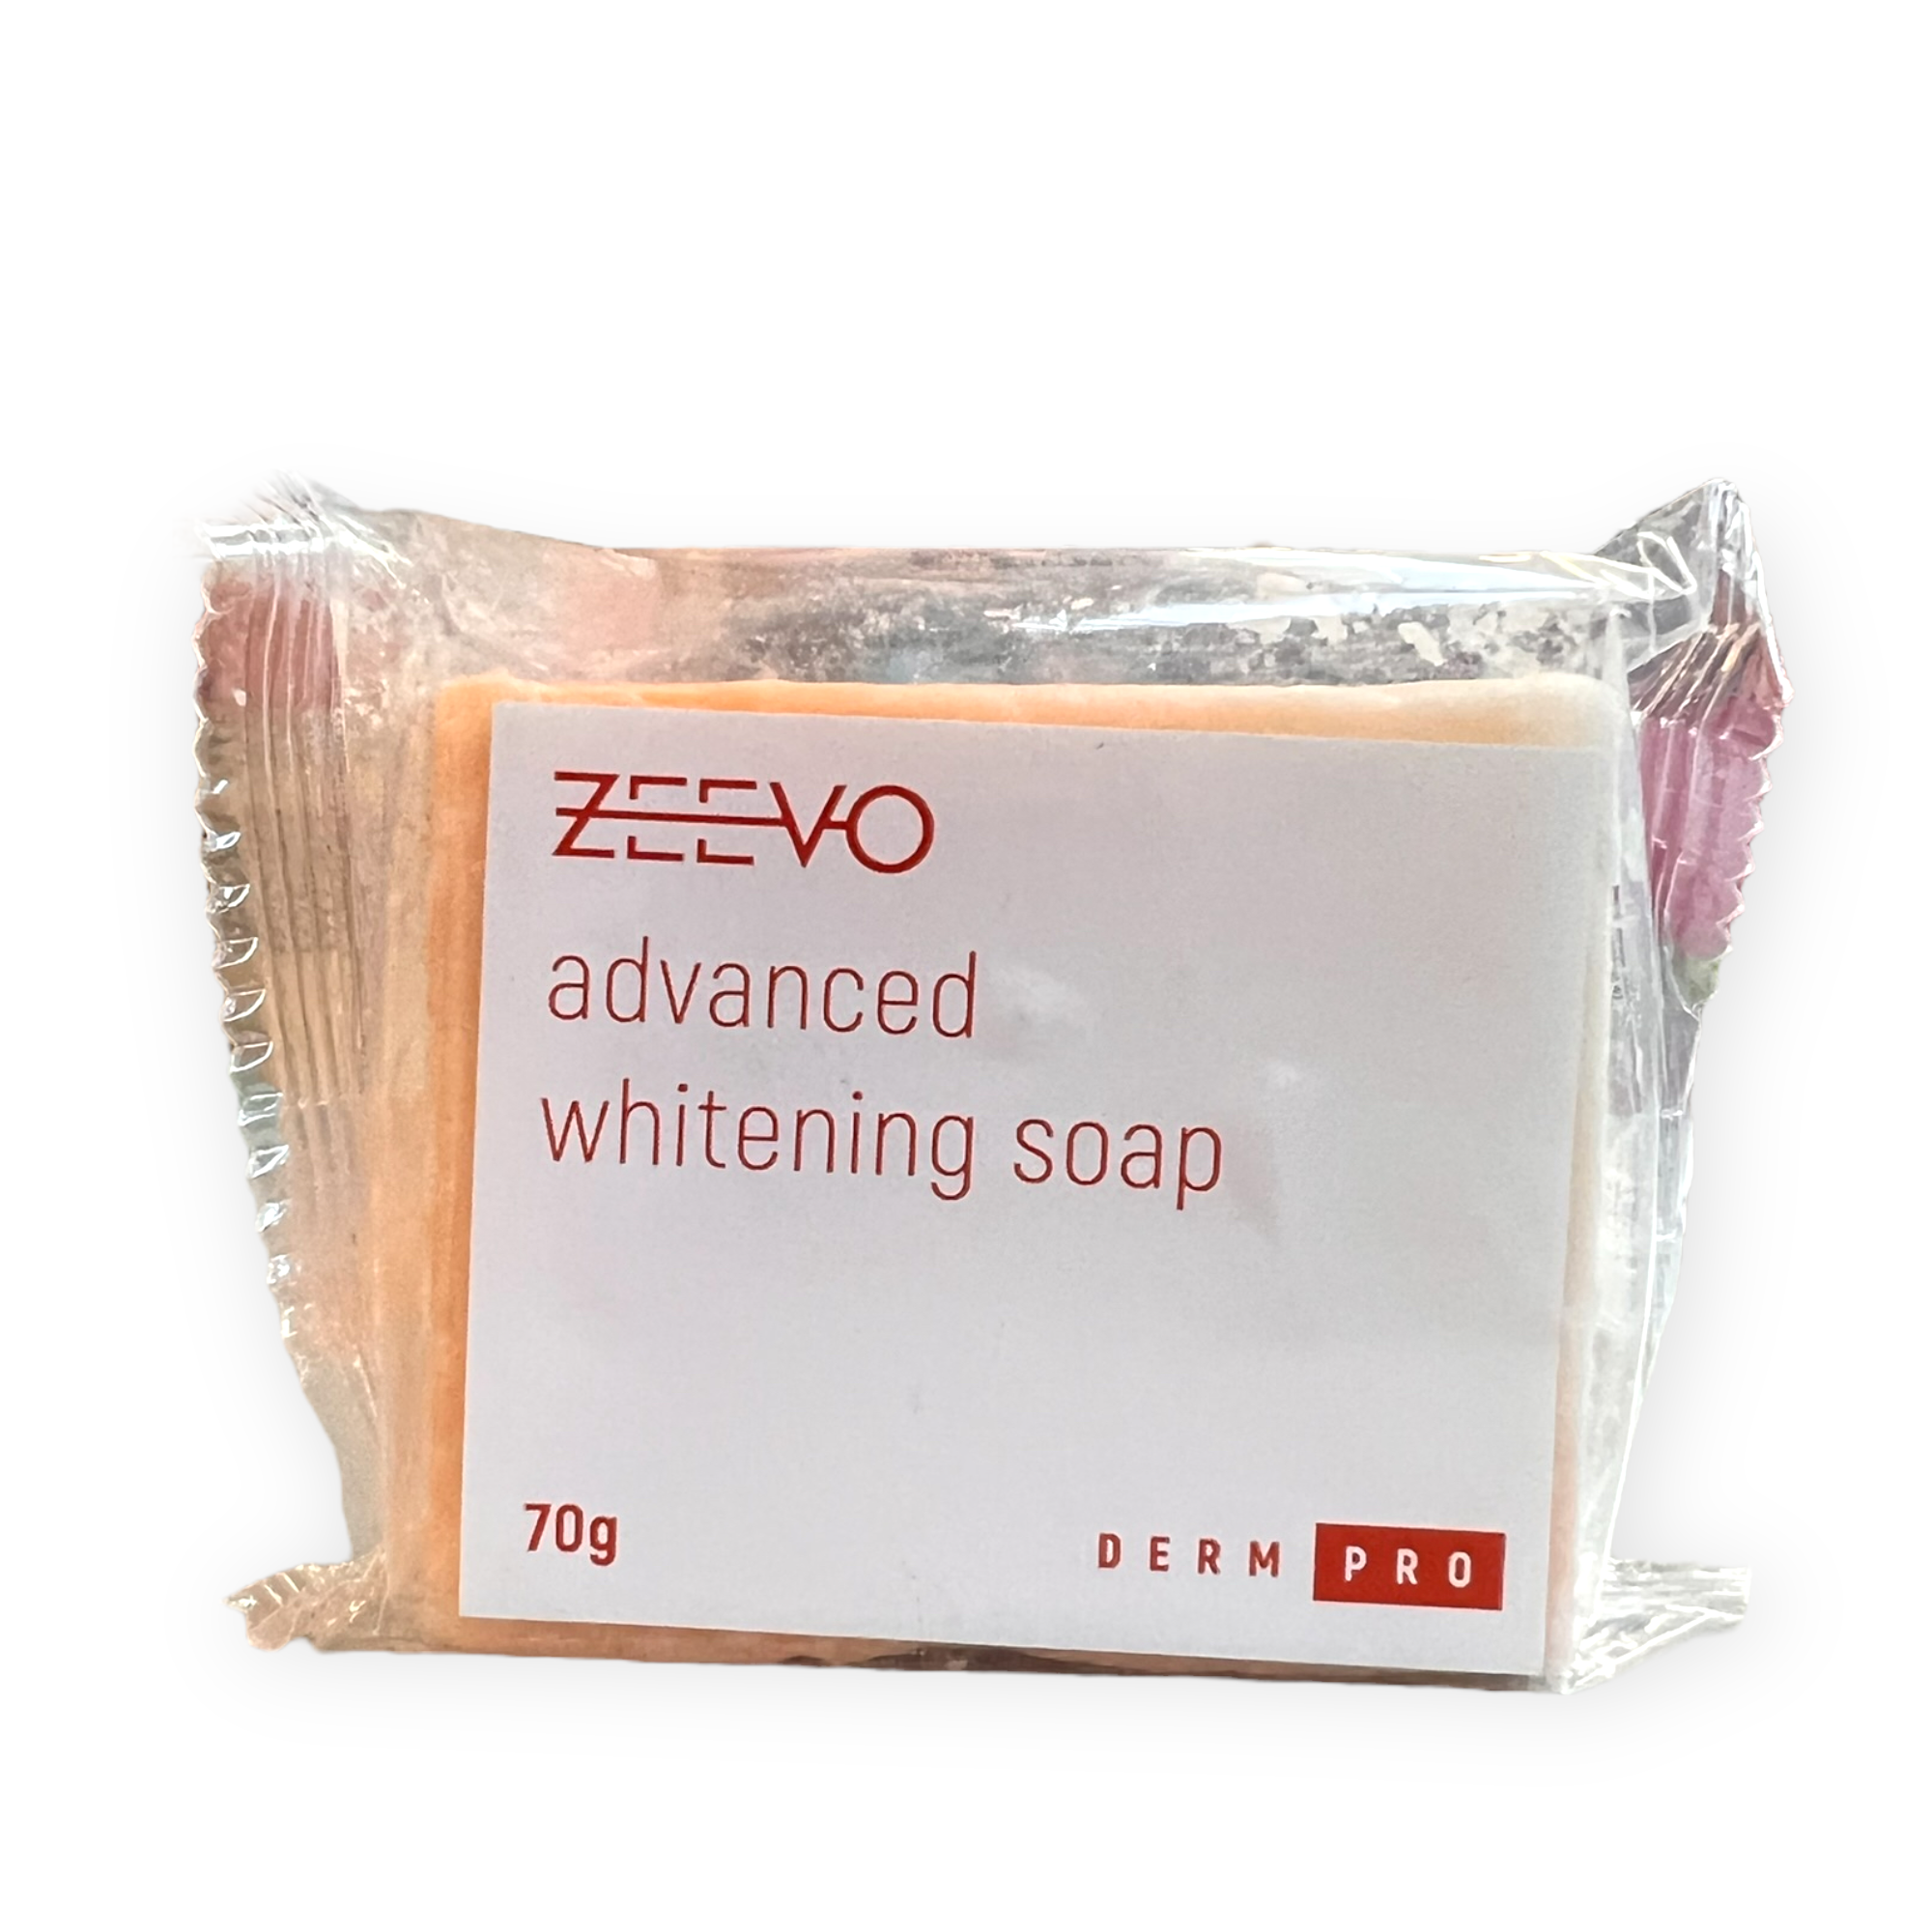 Zeevo Advance Whitening Soap 70g